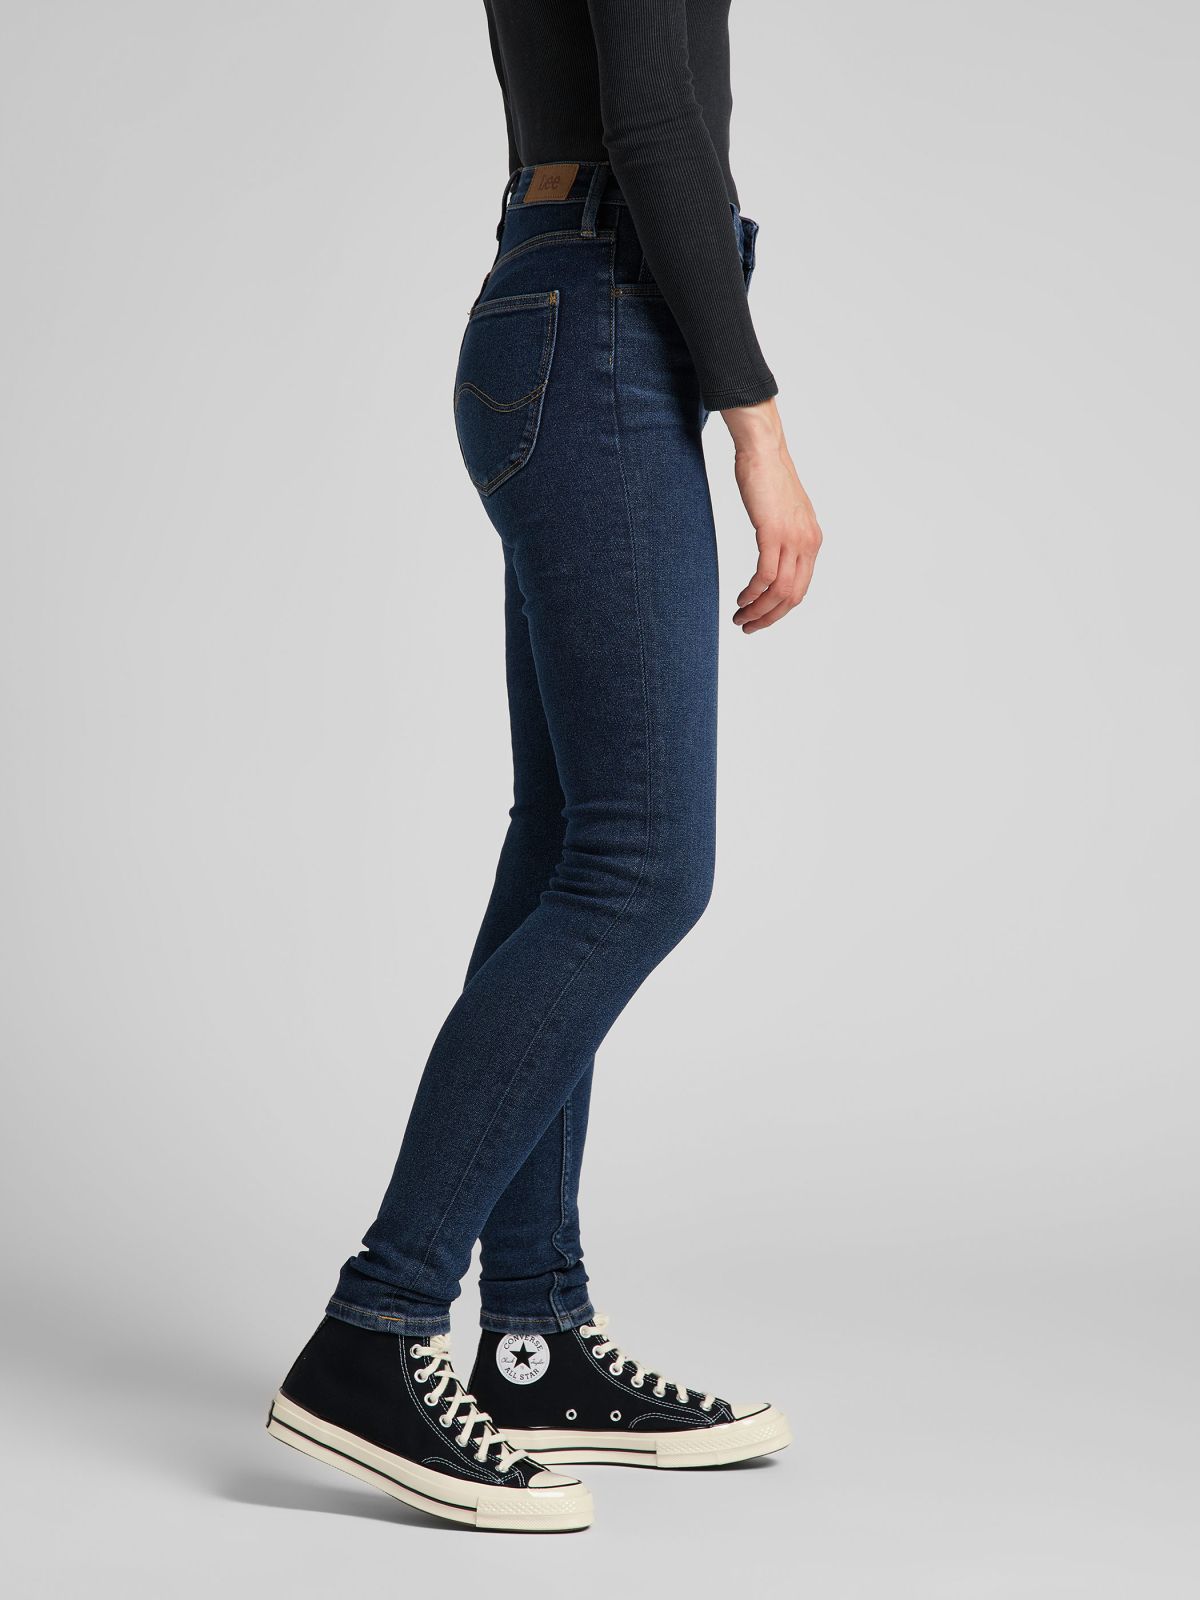  ג'ינס בגזרת סקיני IVY / נשים 	 של LEE